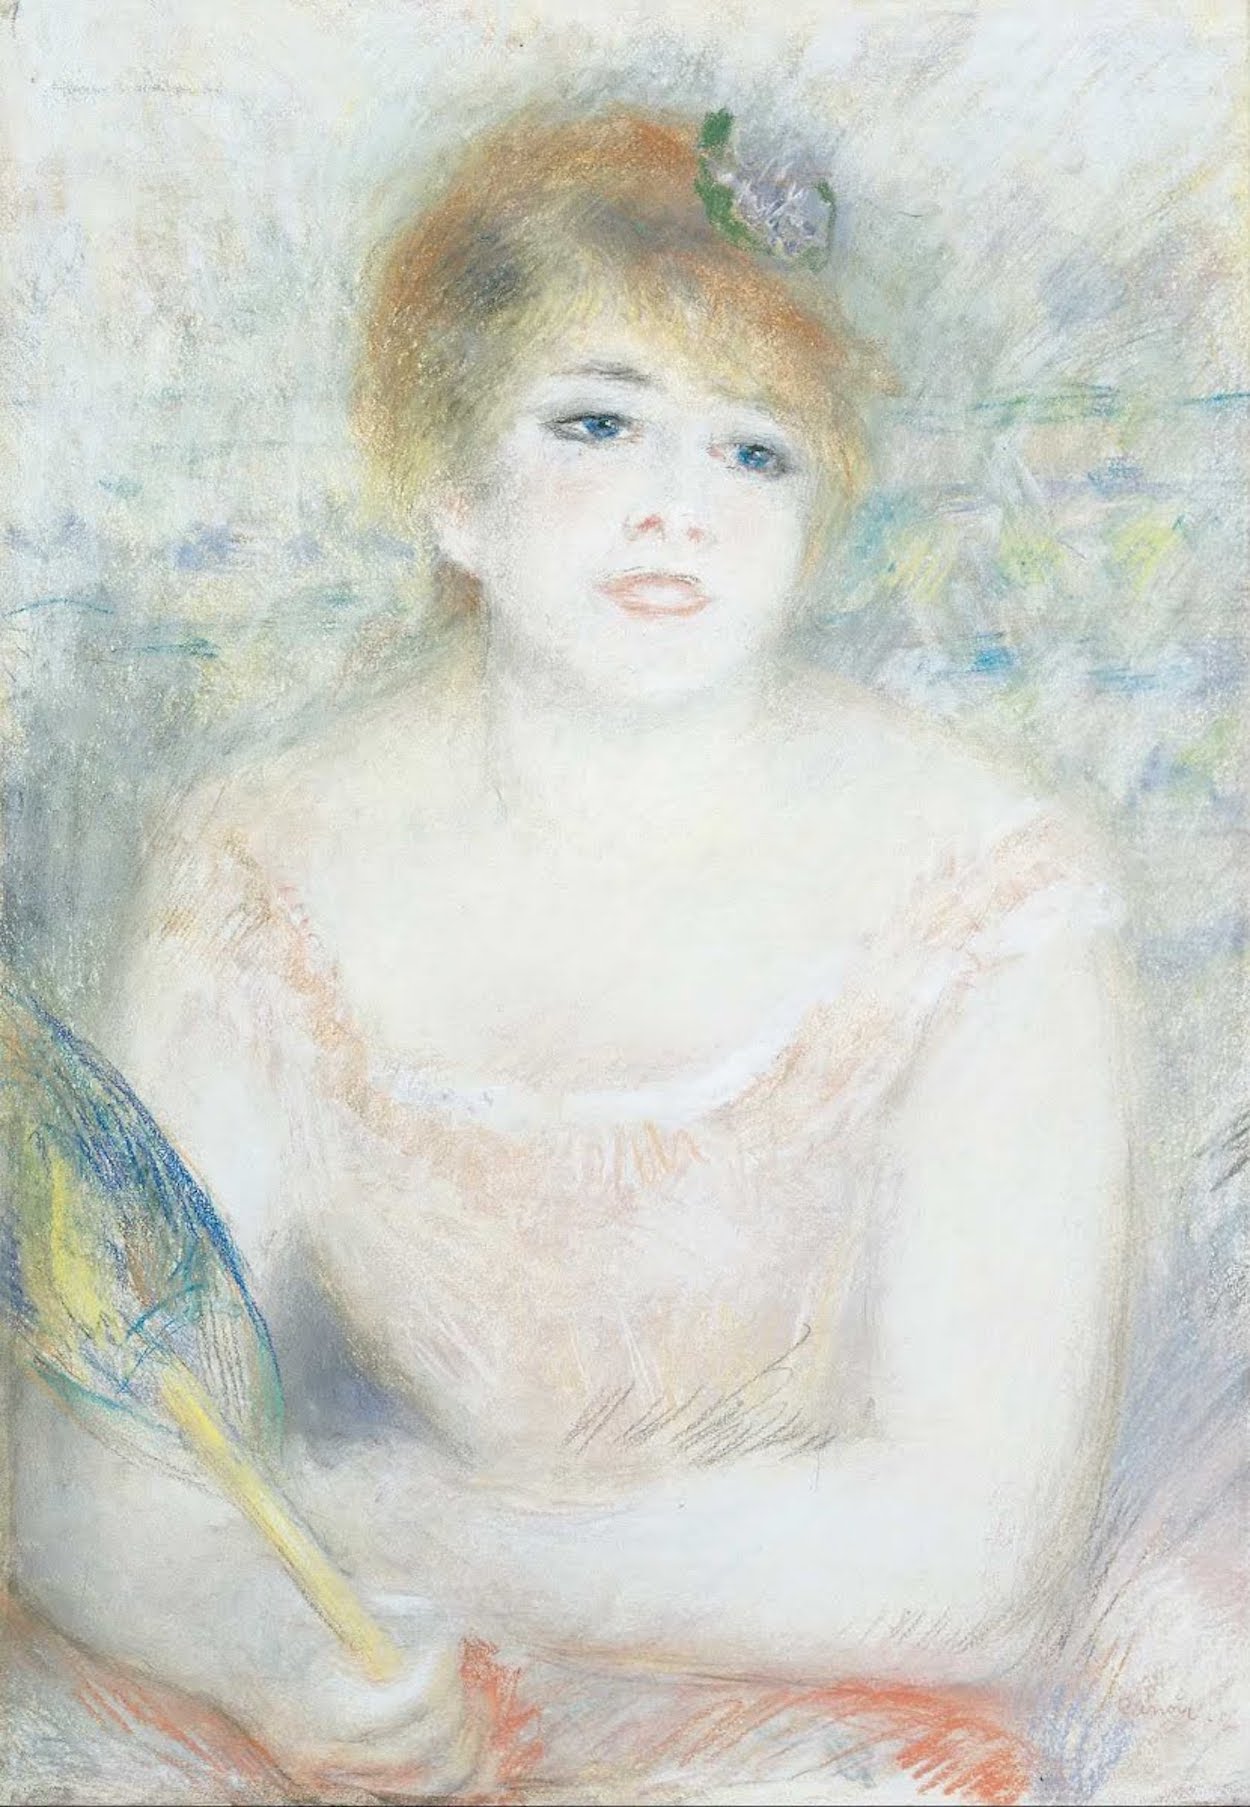 잔느 사마리 by Pierre-Auguste Renoir - c. 1878 - 69.7 x 47.7 cm 